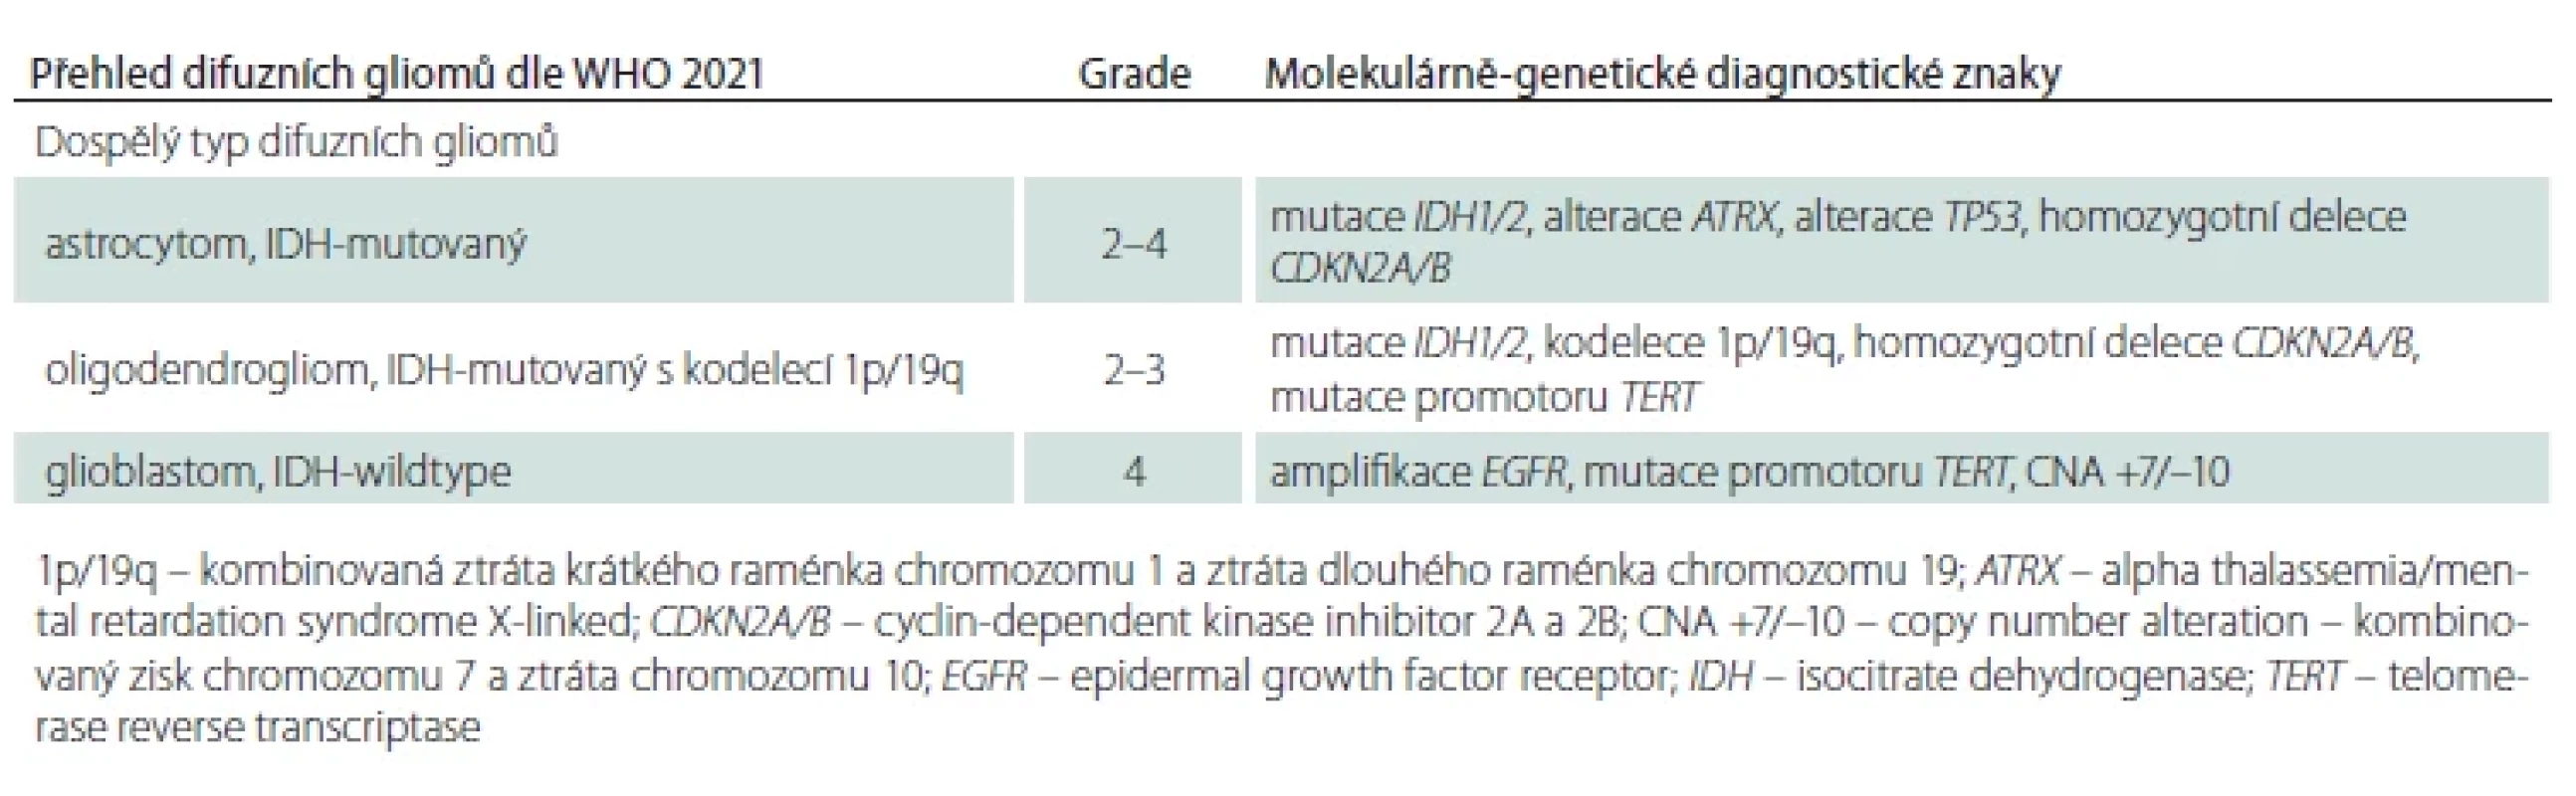 Přehled difuzních gliomů dle WHO 2021 vč. WHO CNS gradu přiřazeného k jednotlivým diagnostickým jednotkám a diagnostických genetických alterací.